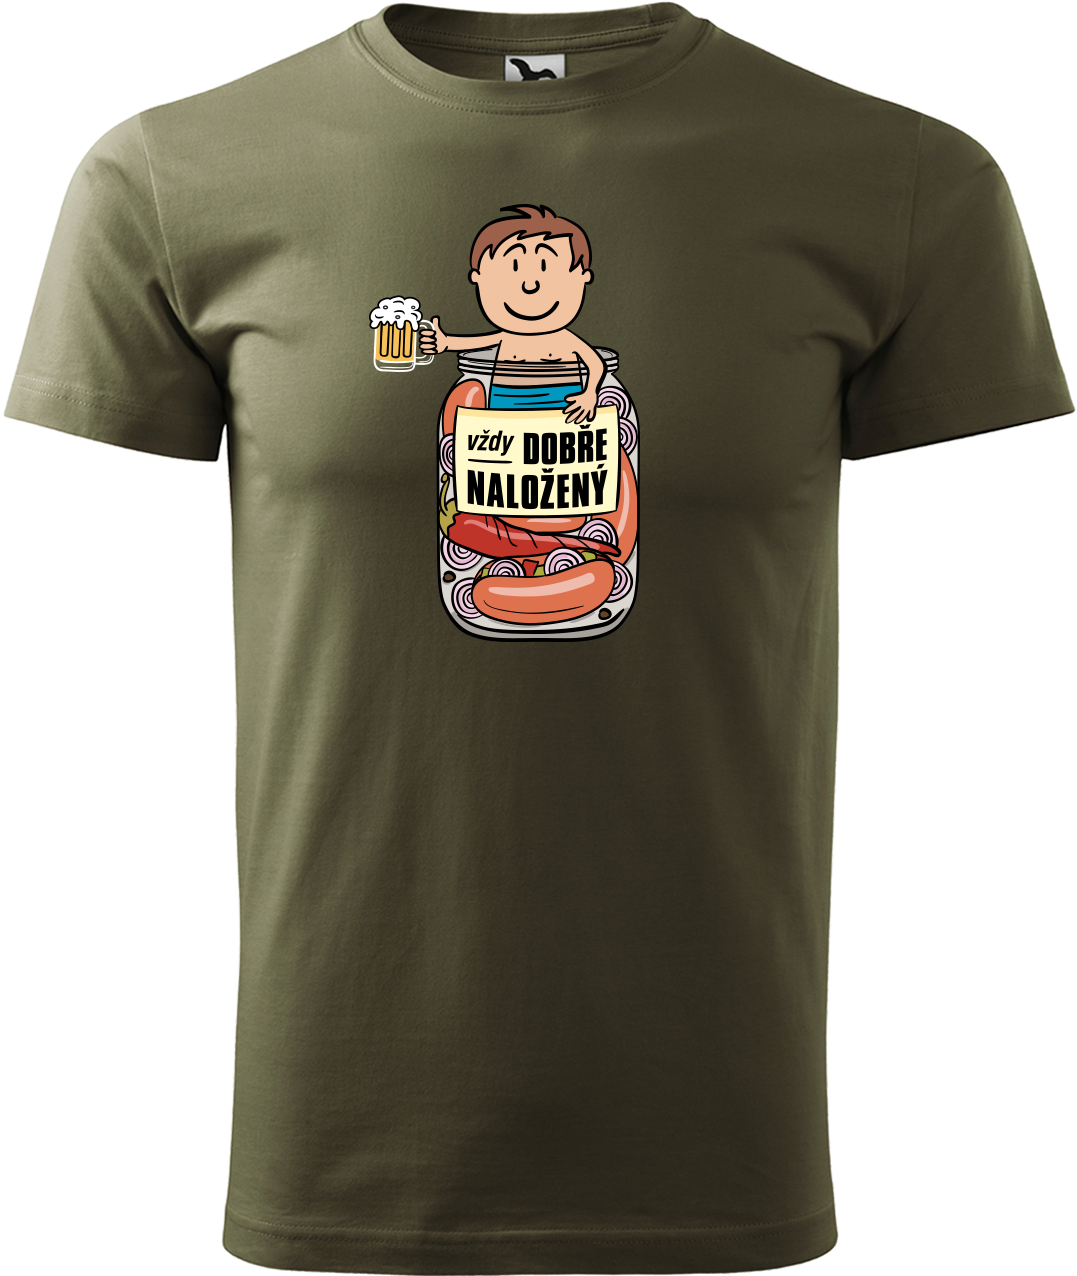 Vtipné tričko - Vždycky dobře naložený Velikost: S, Barva: Military (69)